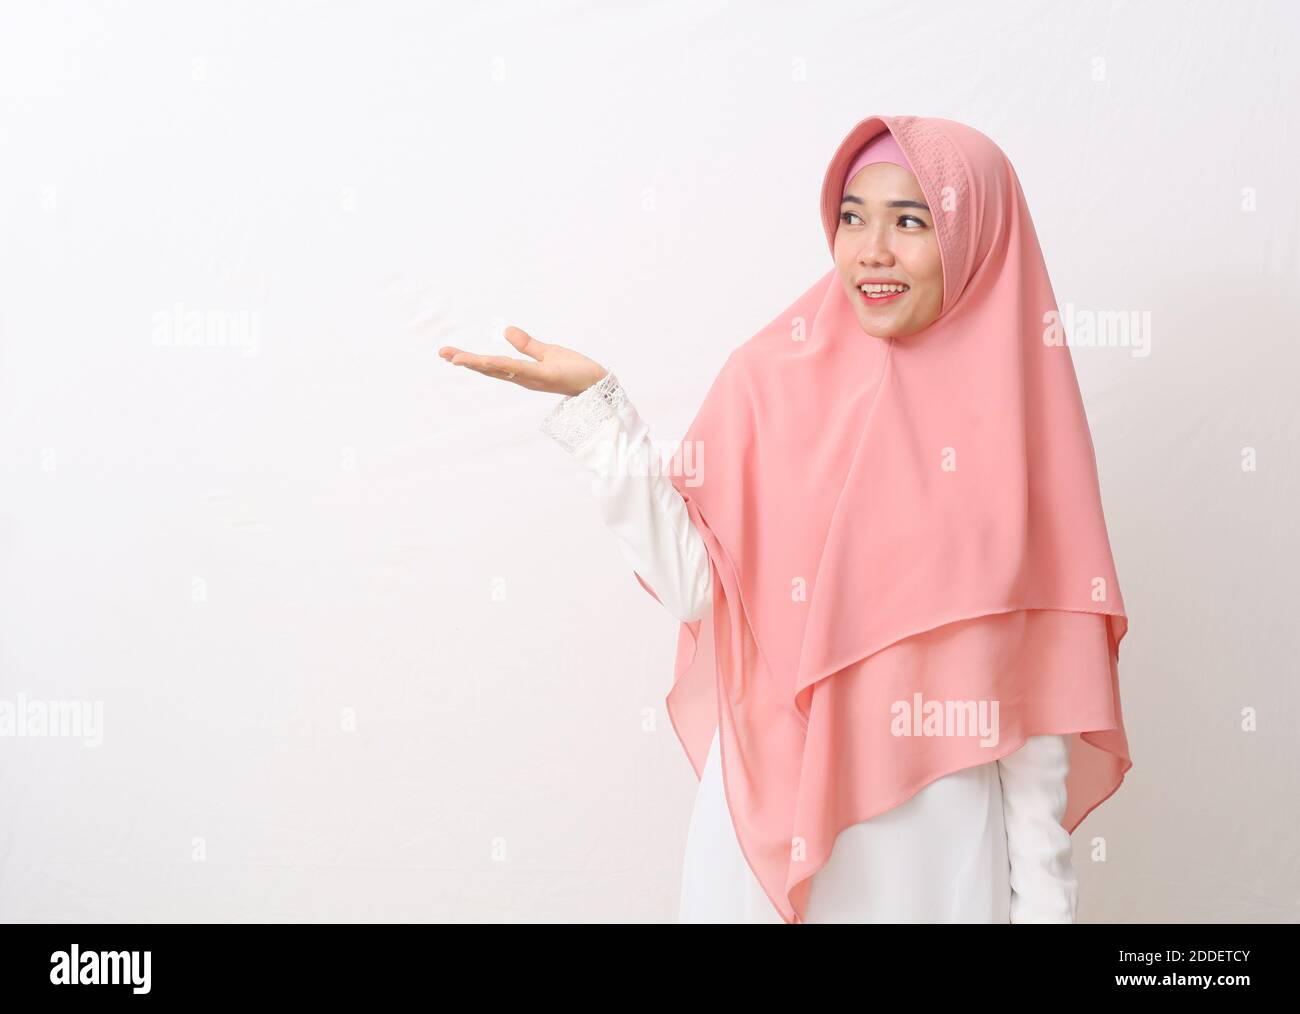 Un ritratto della donna musulmana asiatica felice che indossa un velo o un hijab poiting o che presenta qualcosa accanto a lei. Isolato su sfondo bianco con copia spac Foto Stock